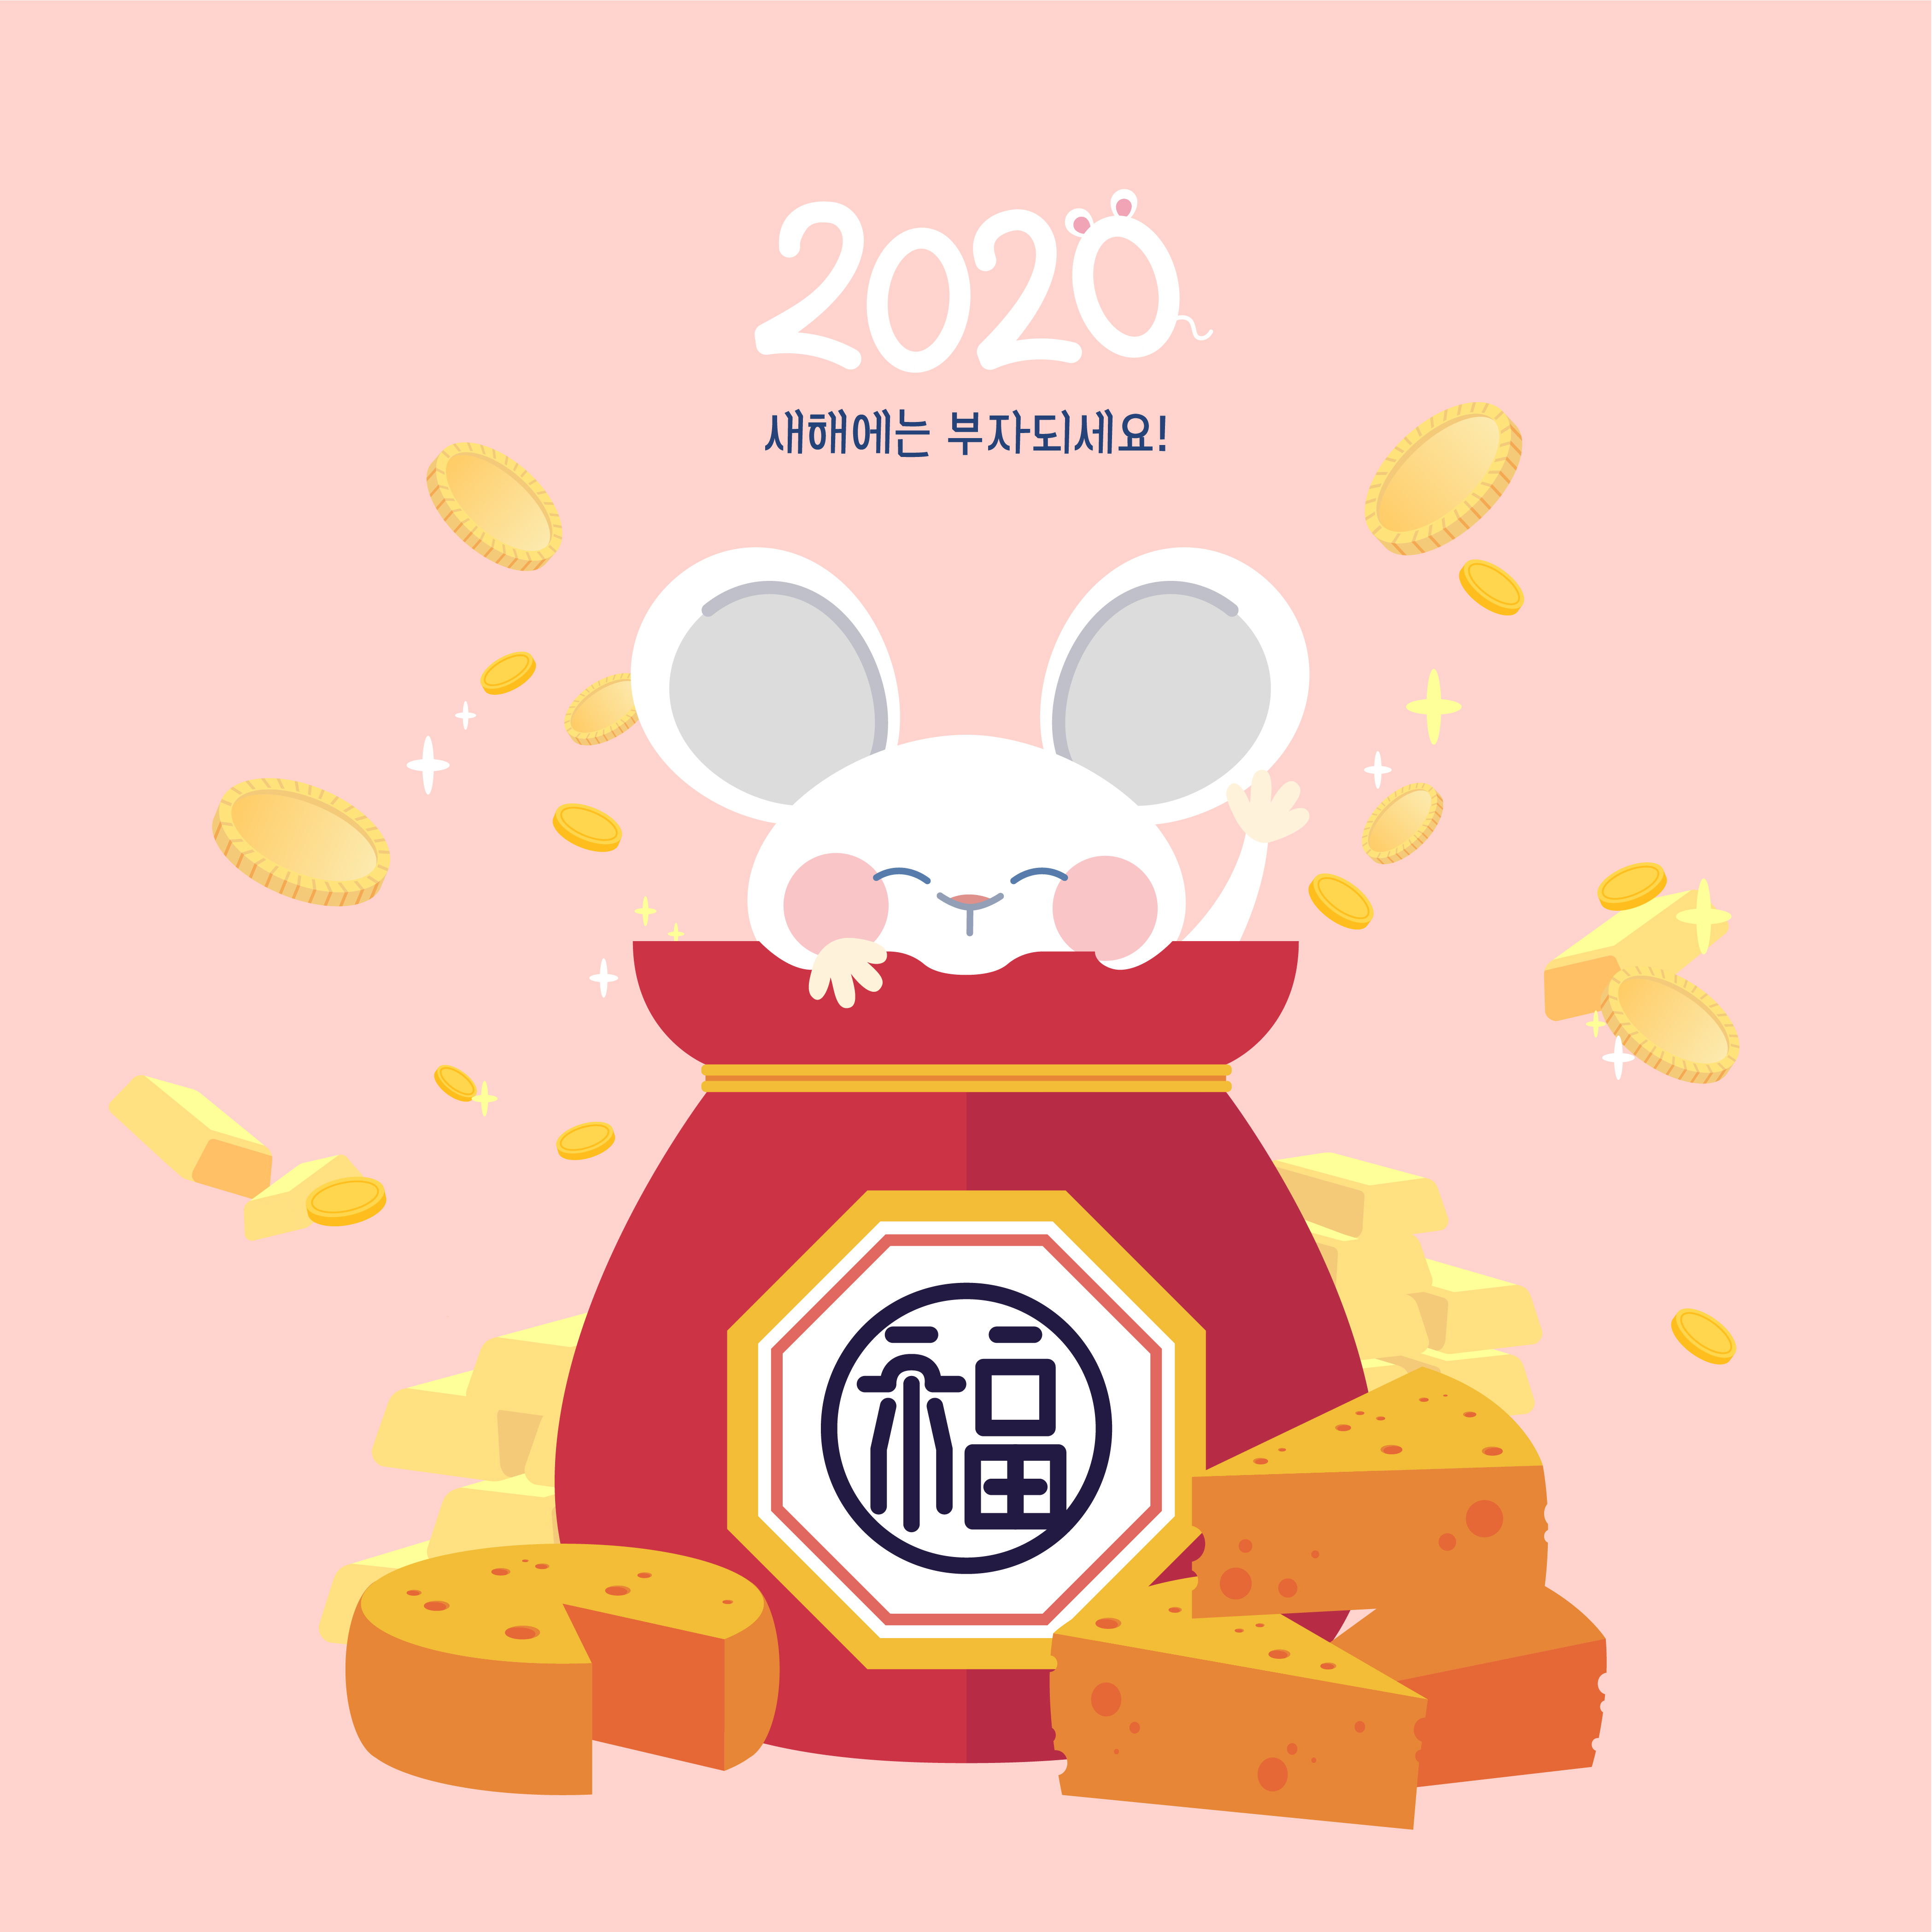 超级有钱的韩式2020年卡通可爱金币风格鼠年海报模板